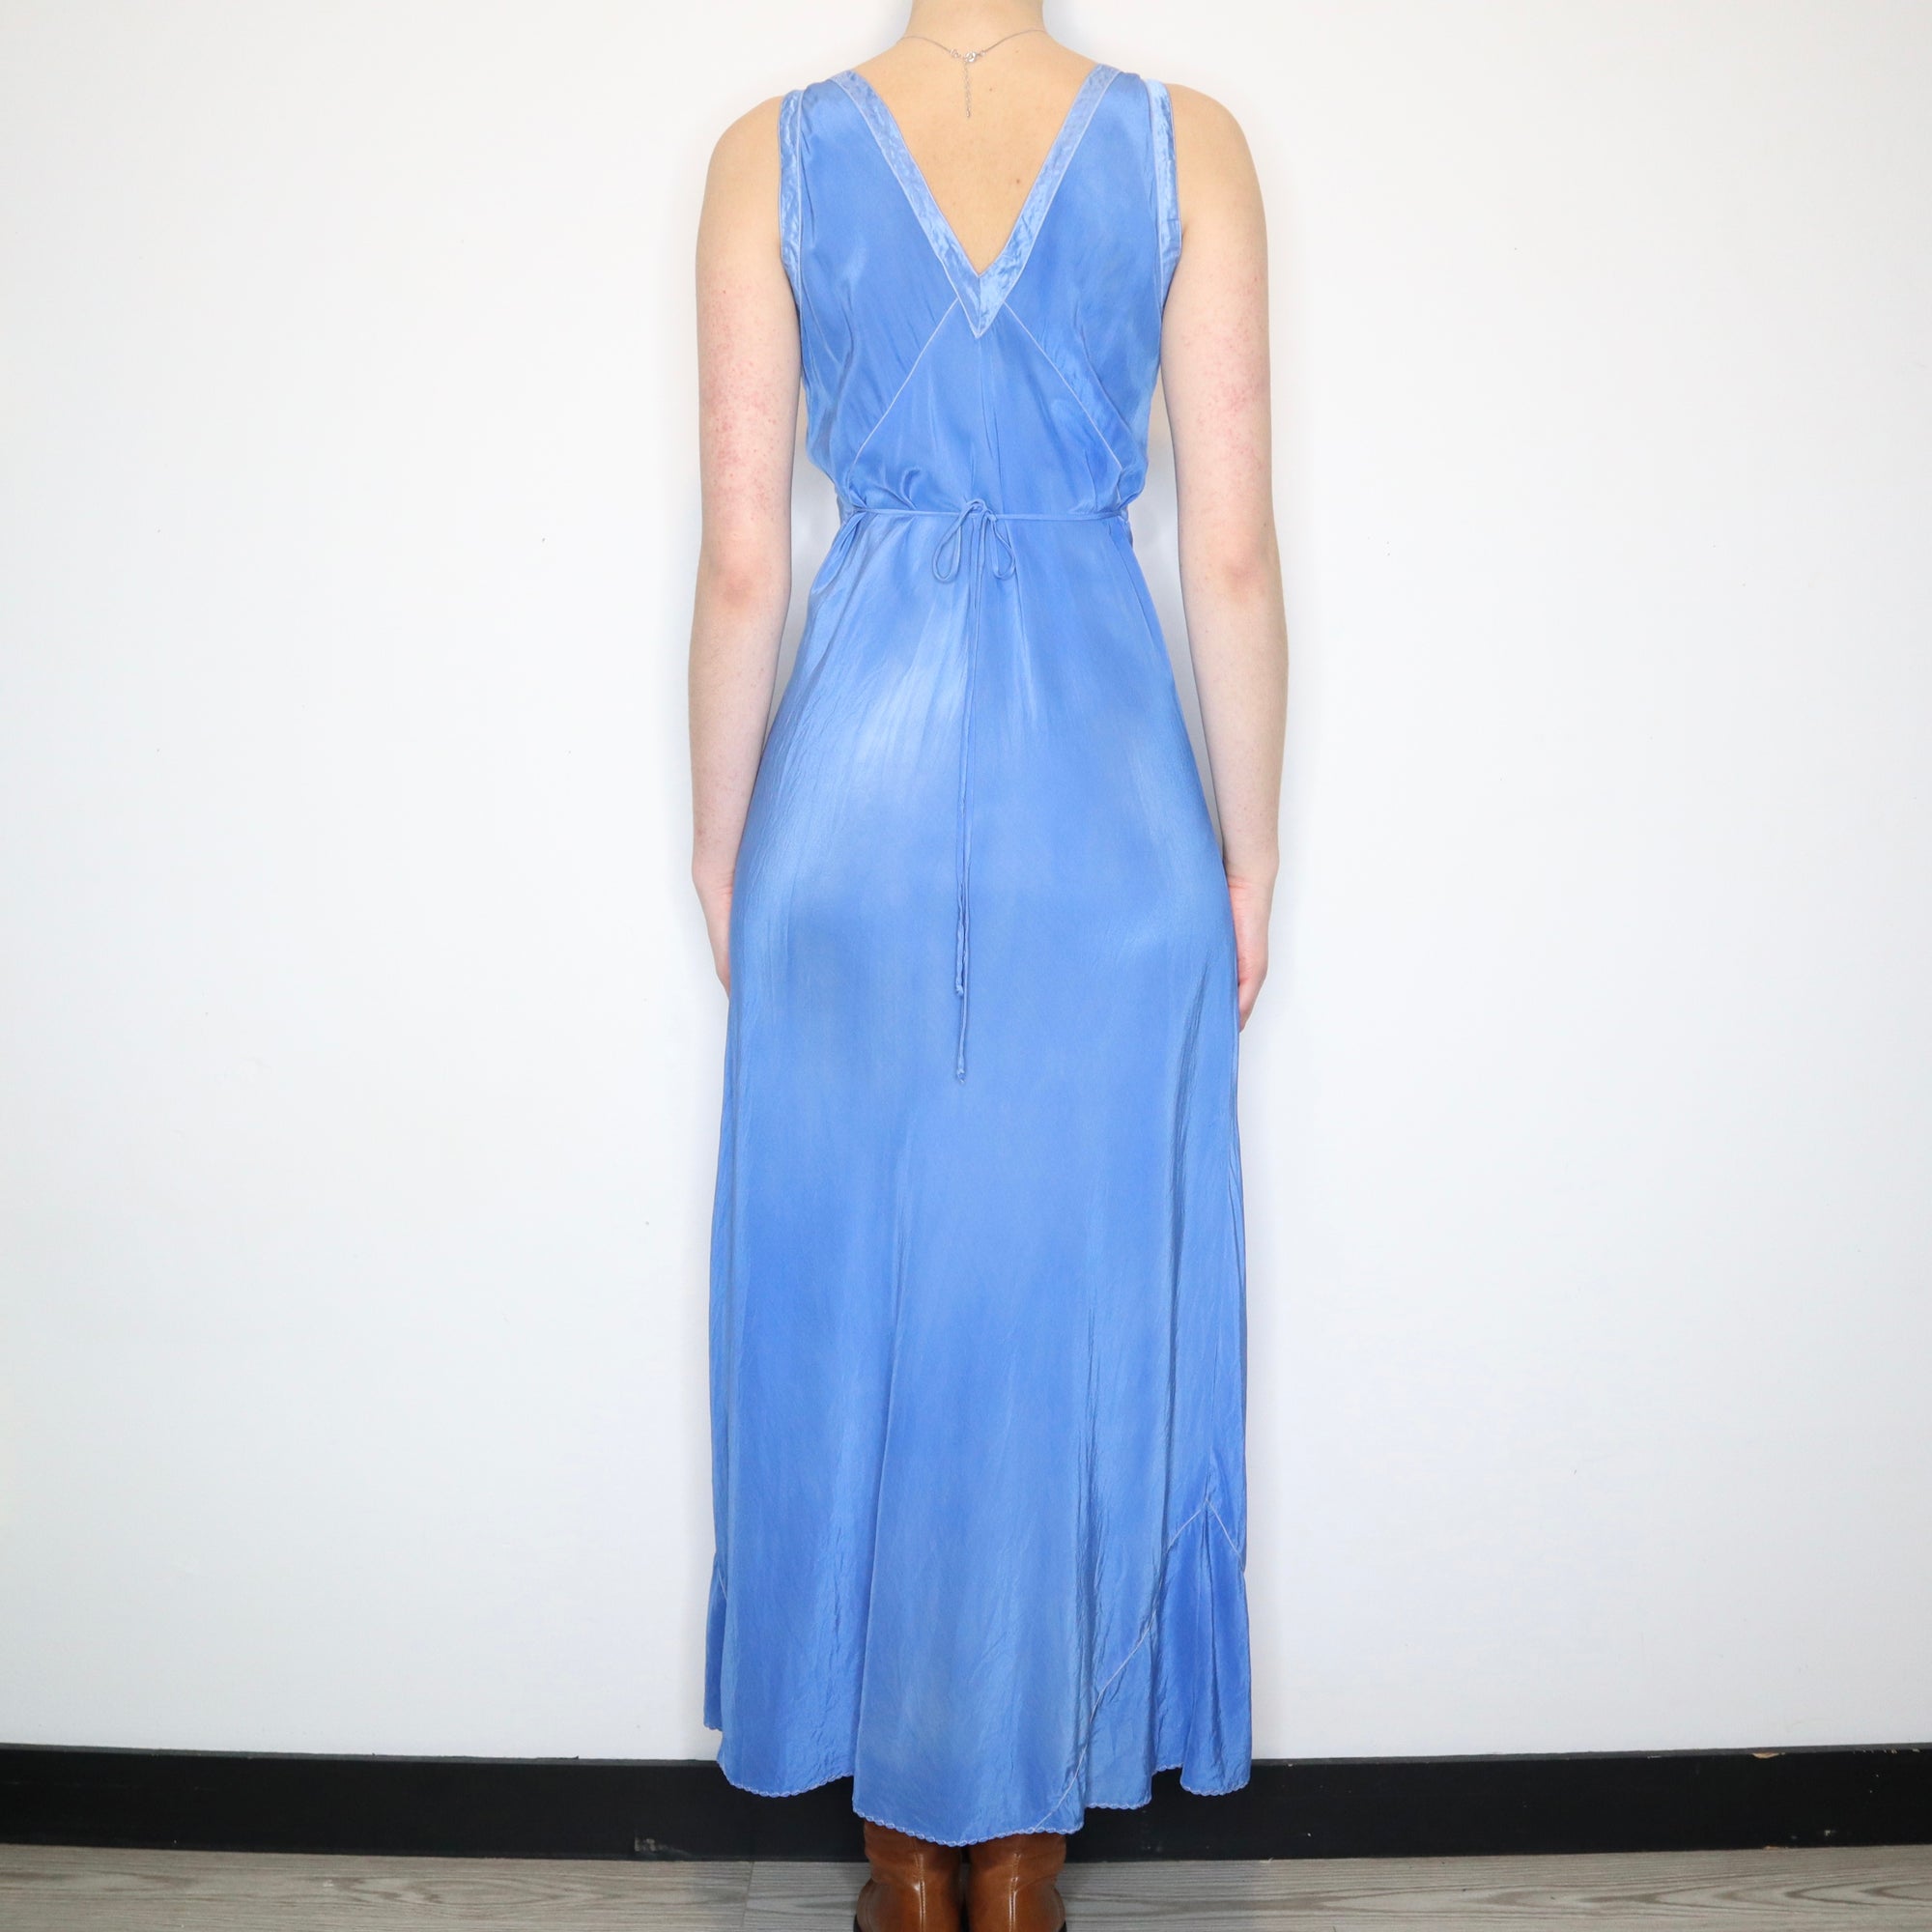 Antique Blue Nightgown (Medium)